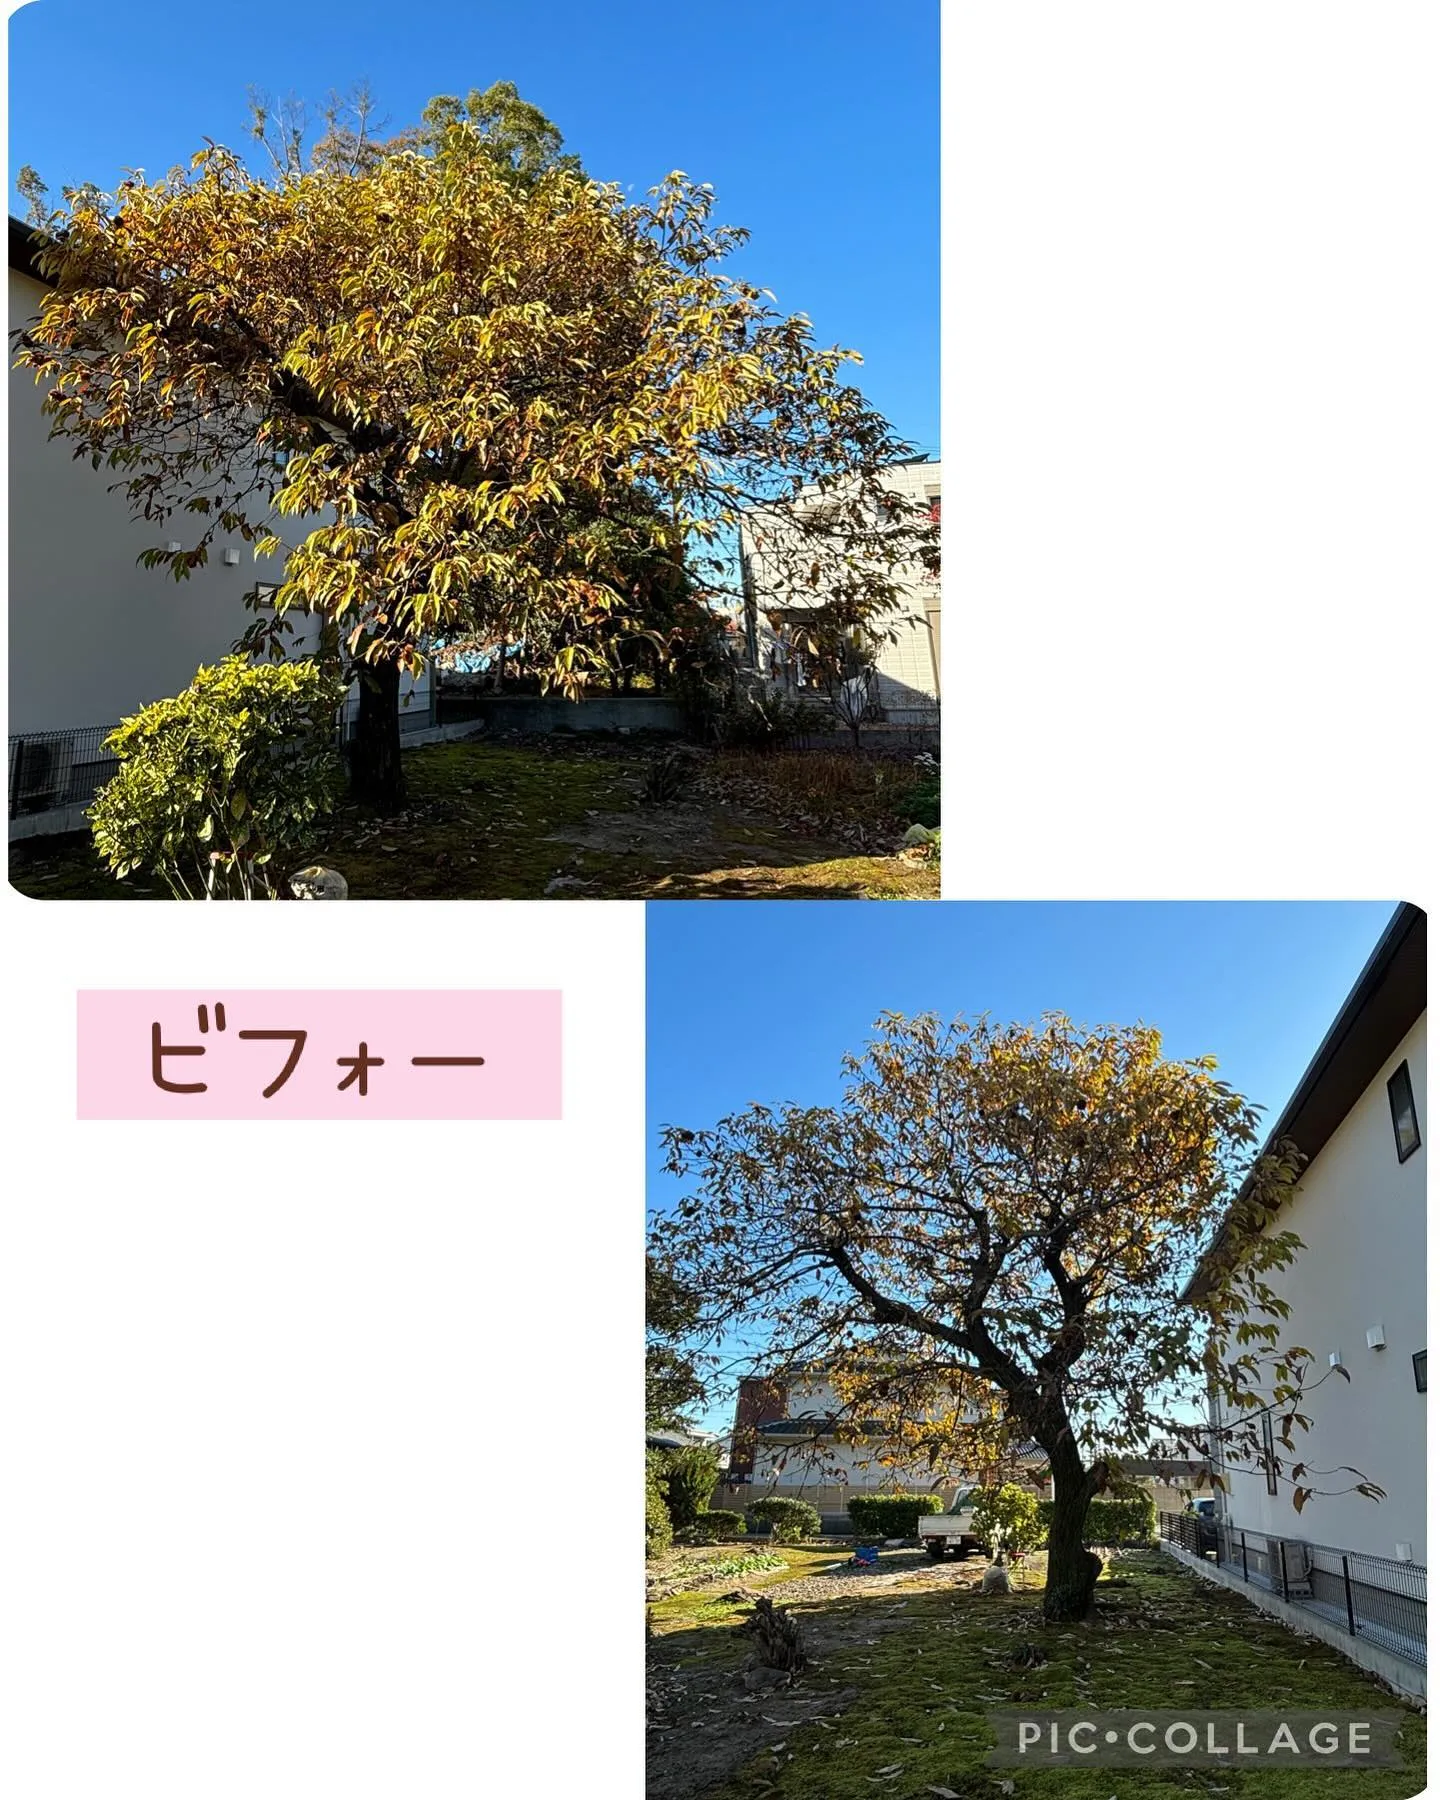 今日は春日井市で栗の木の剪定して来ました。